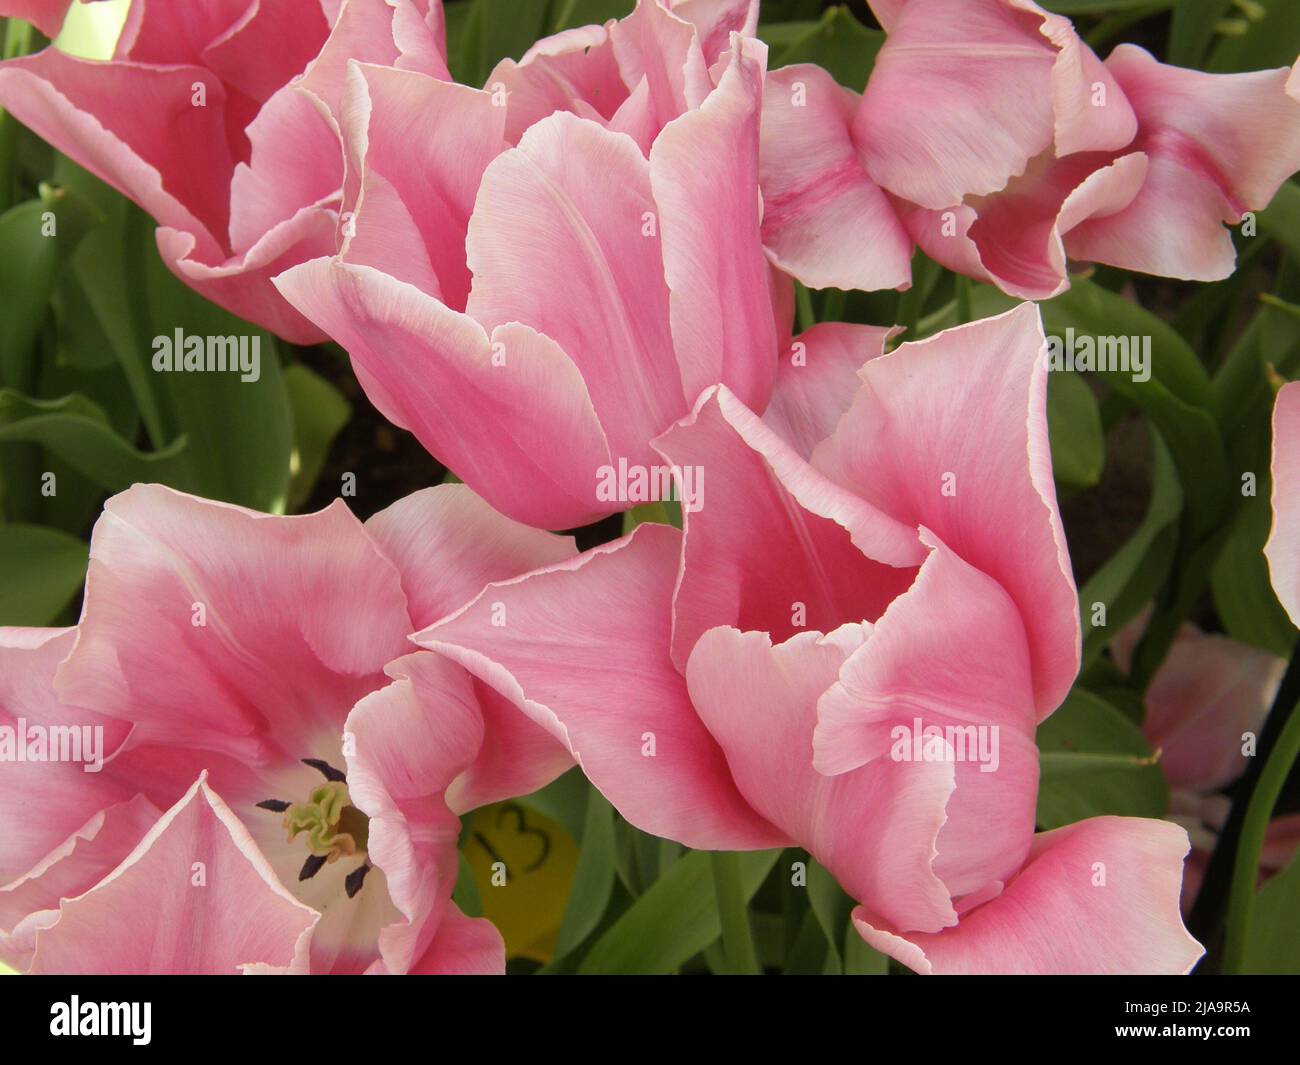 Rosa singolo tulipani tardivi (Tulipa) Monte Vernon fiorisce in un giardino nel mese di aprile Foto Stock